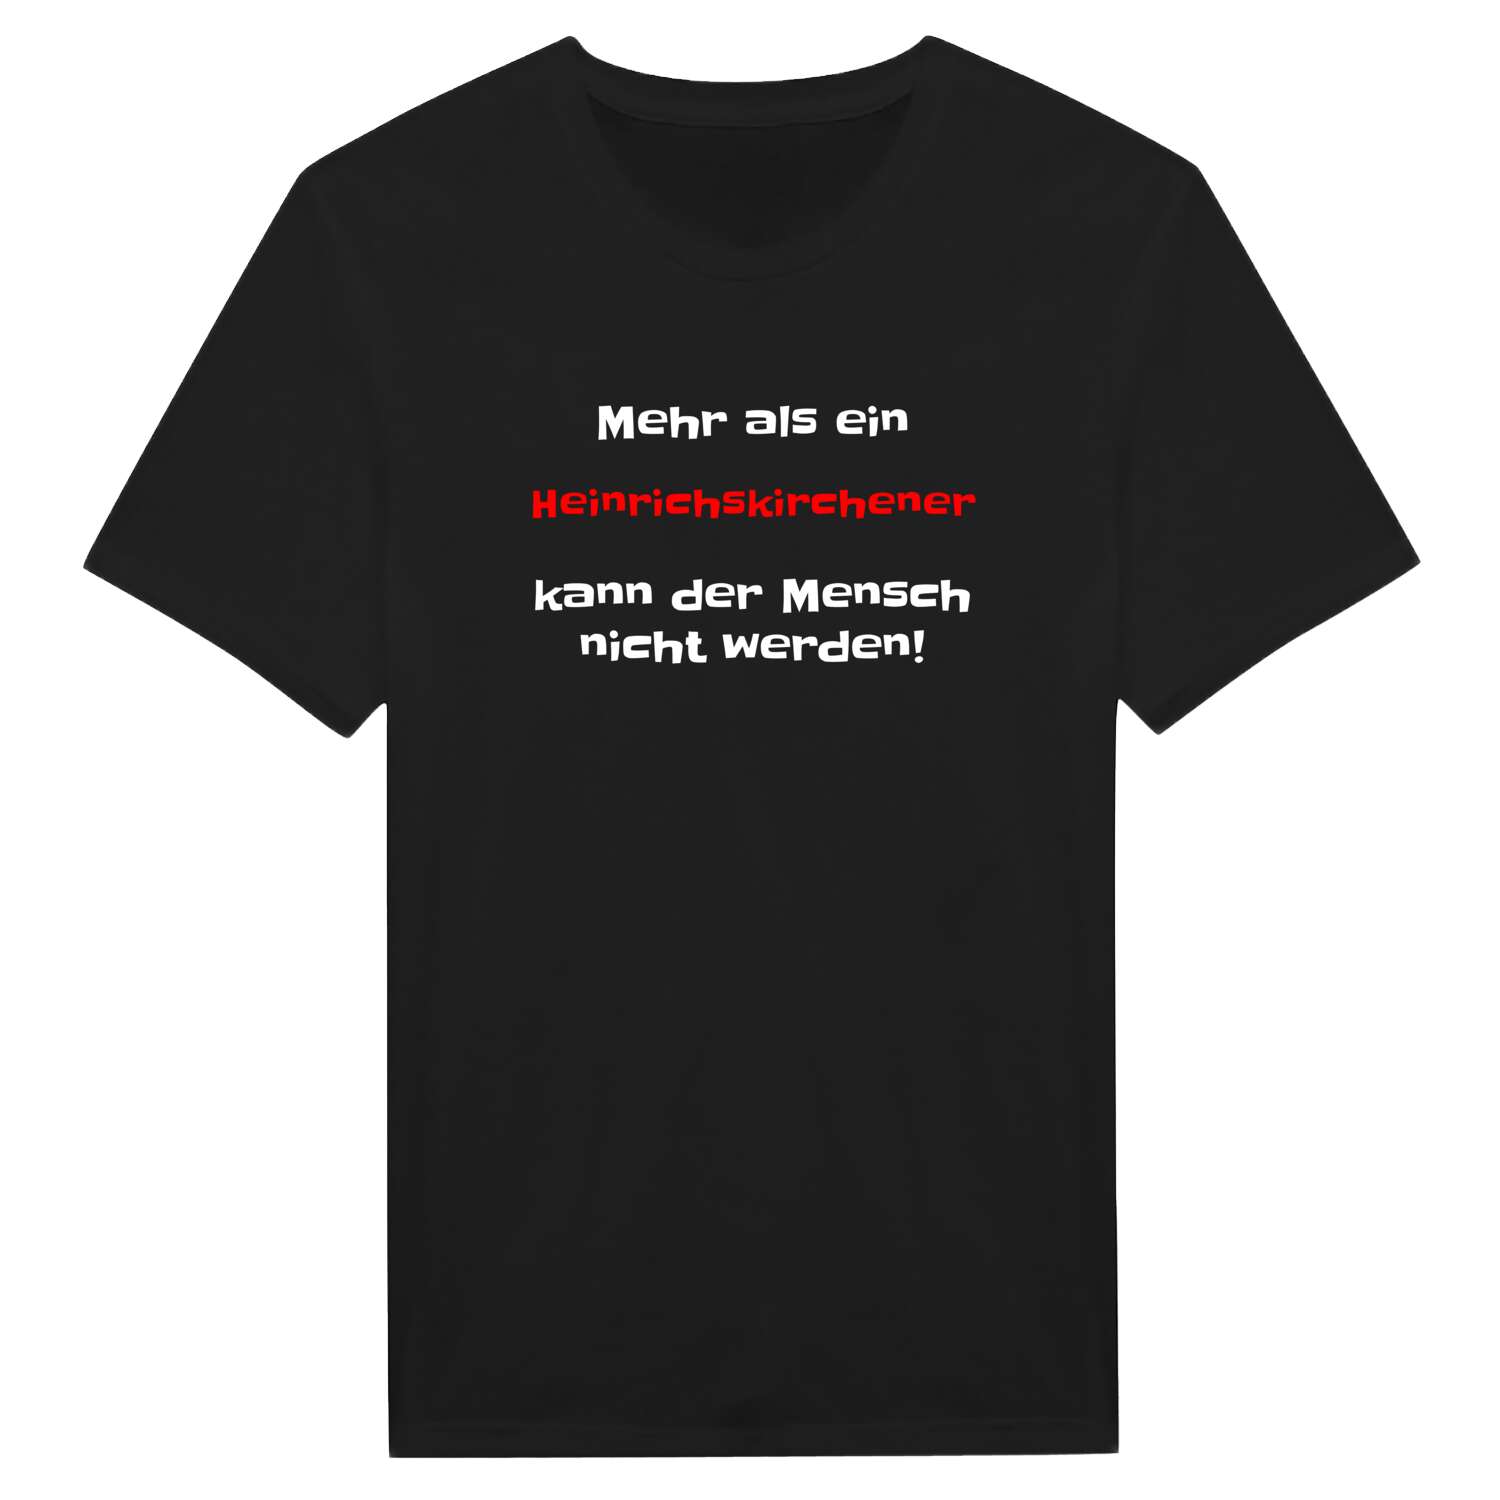 Heinrichskirchen T-Shirt »Mehr als ein«